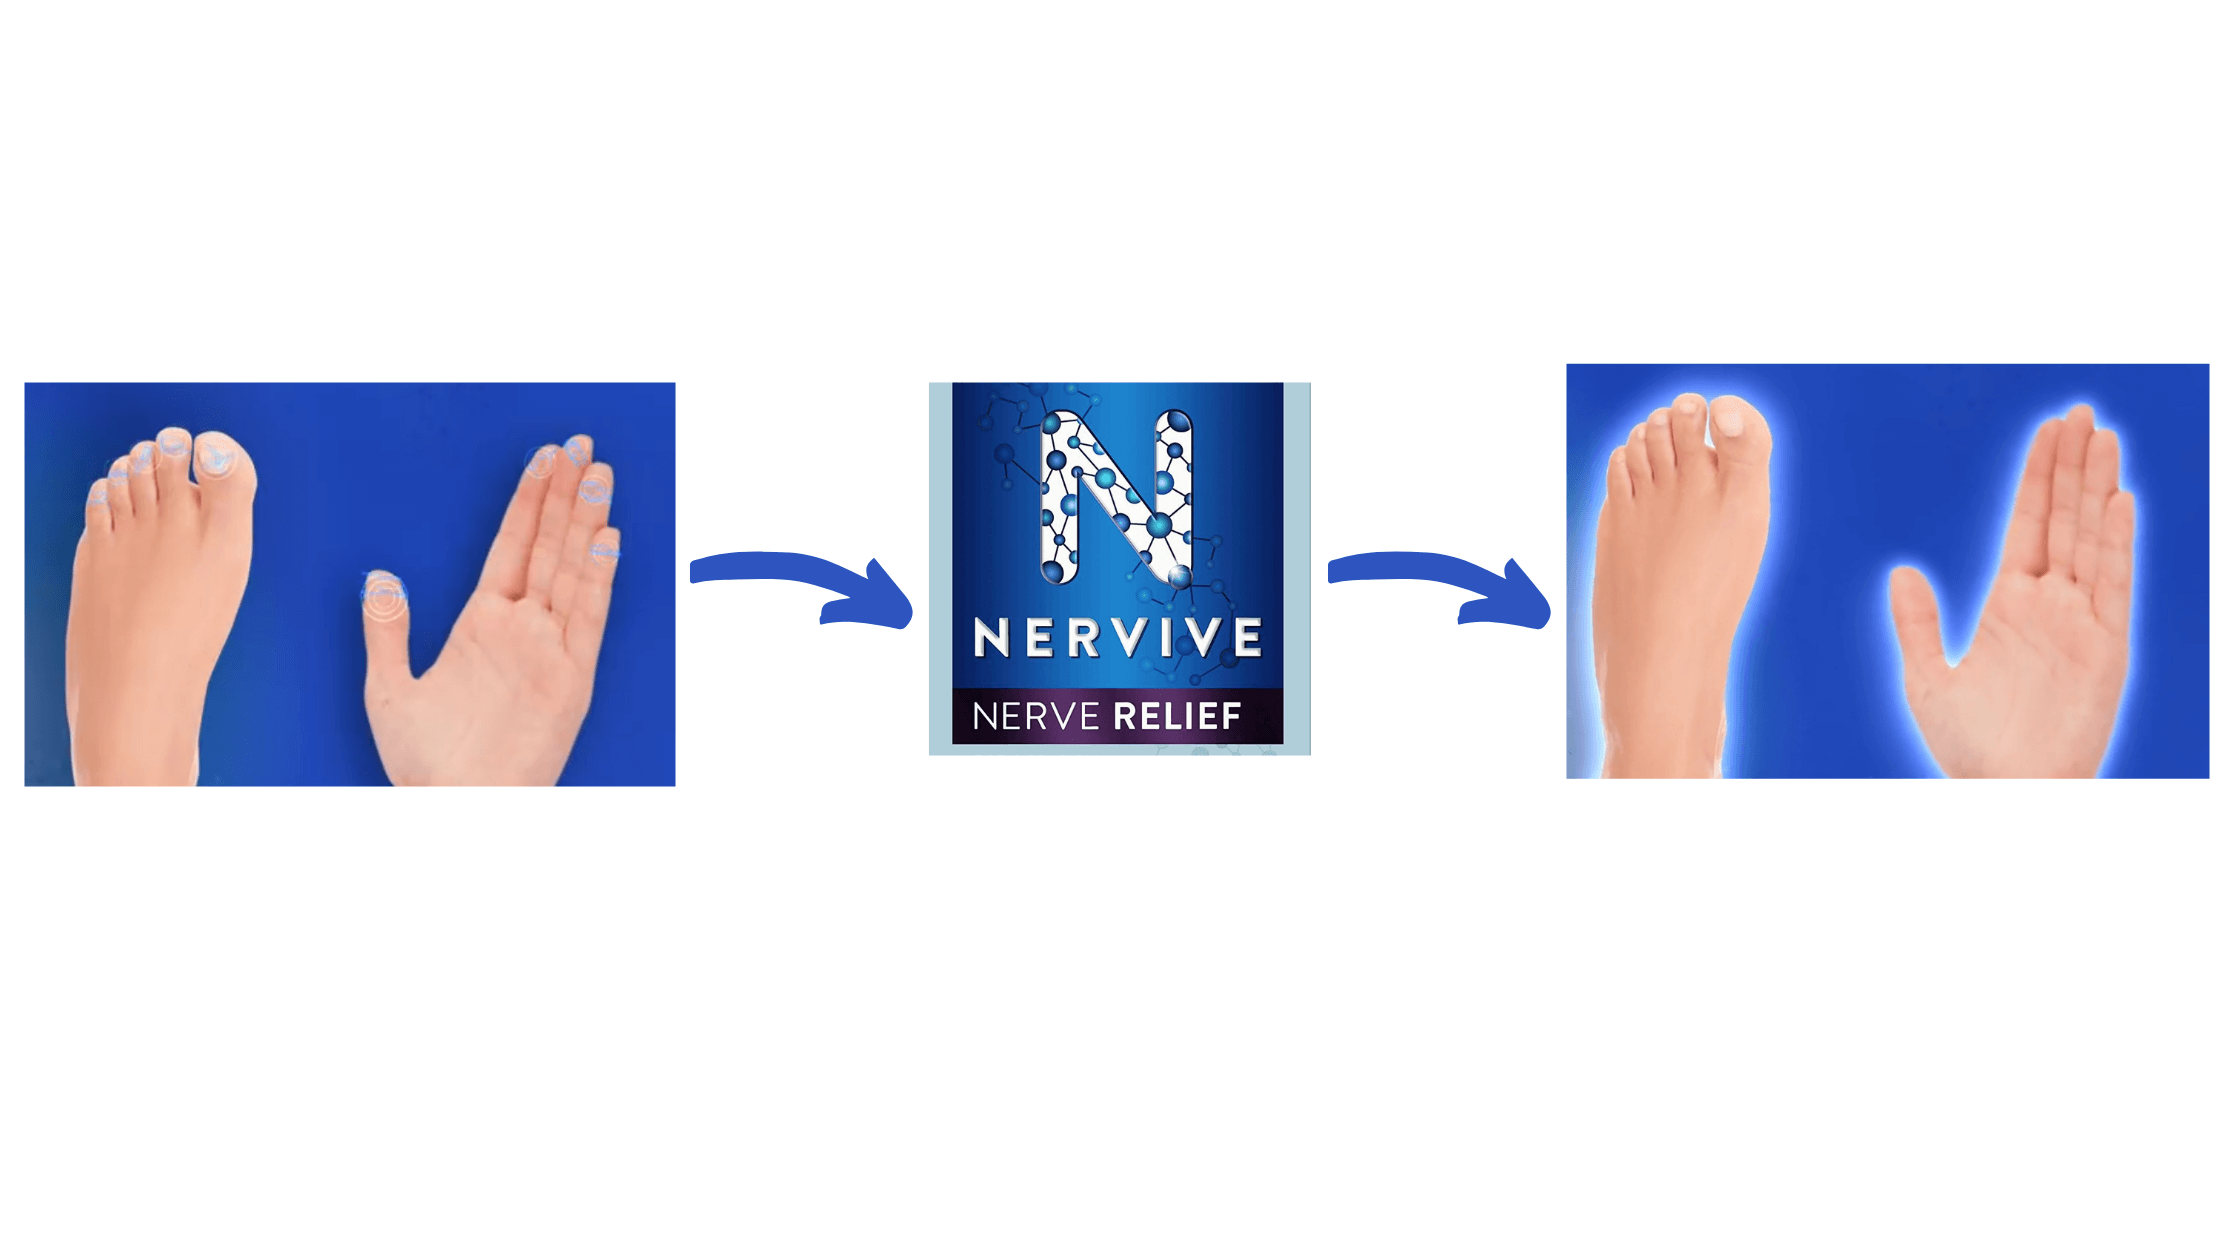 Nervive Nerve Relief working